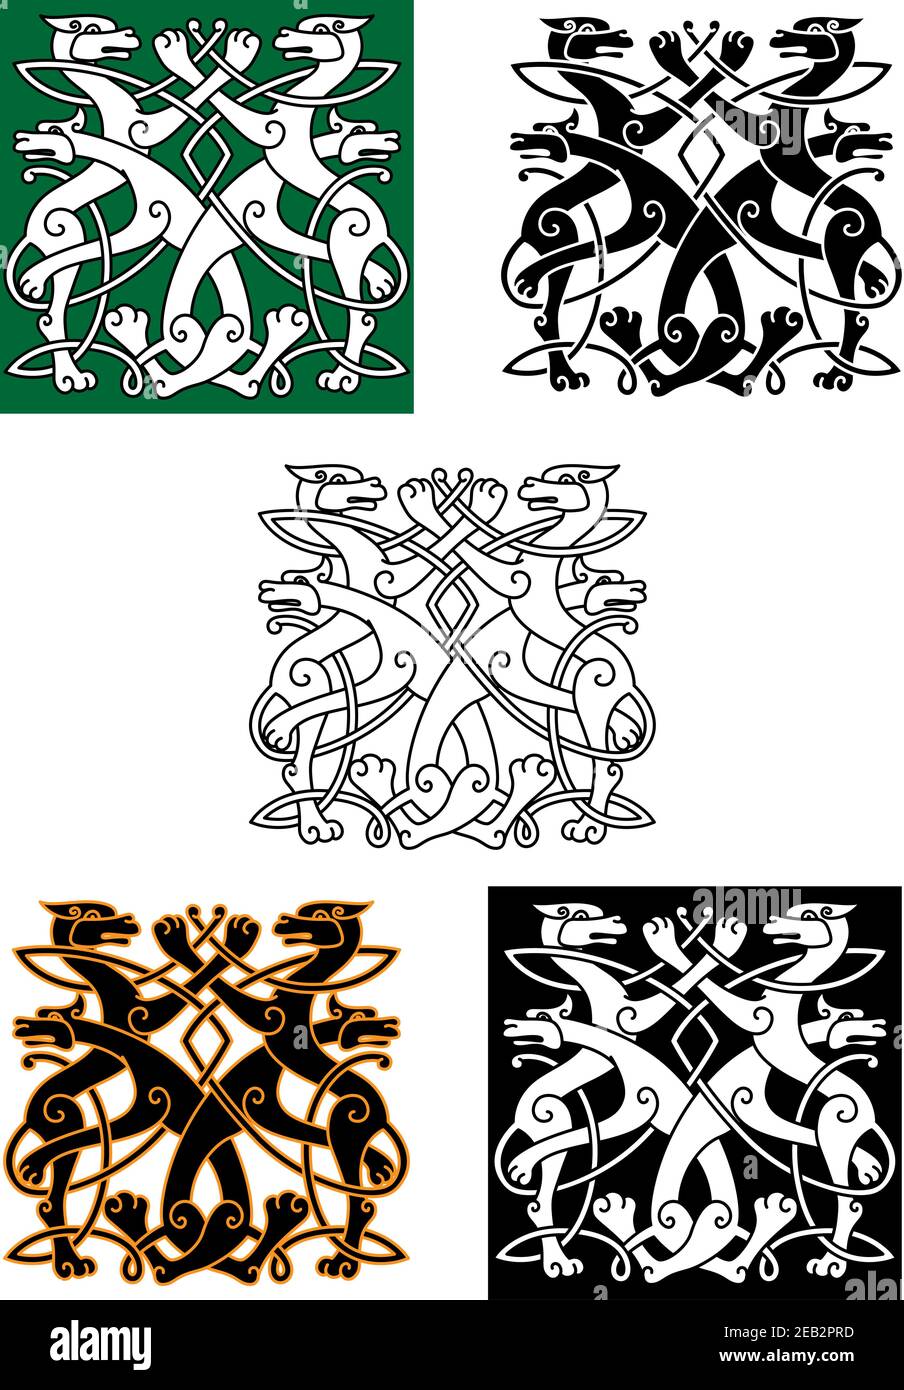 Keltische Tiere Muster mit Wölfen verdreht und in Knoten Ornament gebunden. Für Heraldik oder Kunstdesign Stock Vektor